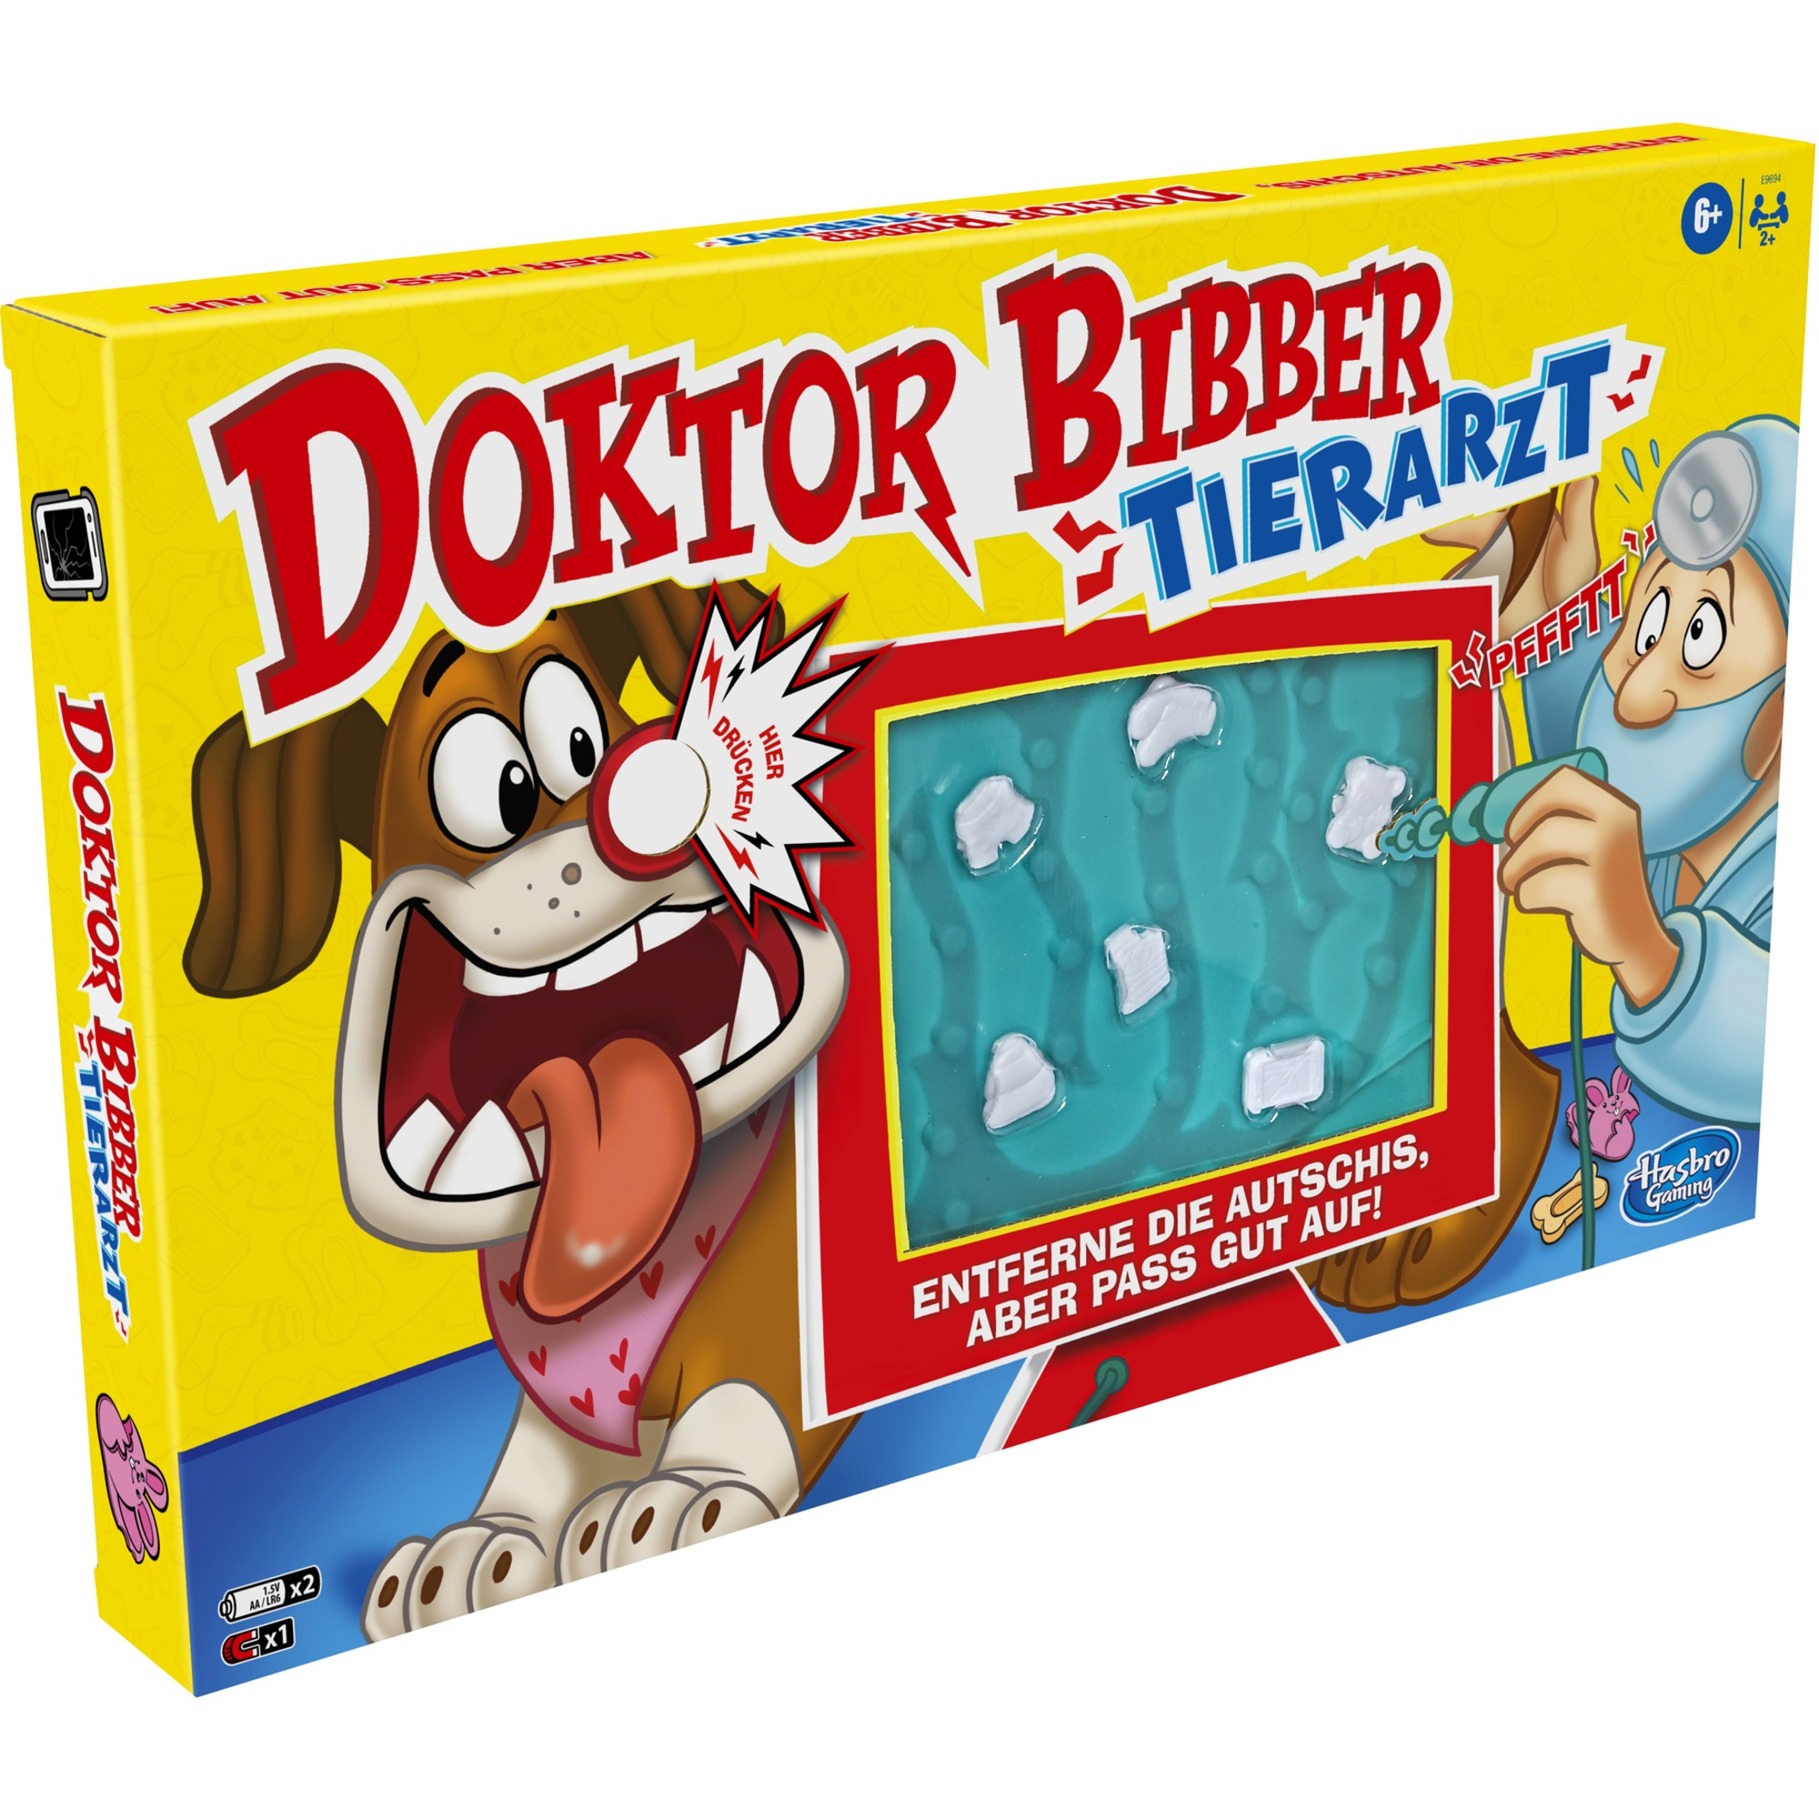 Image of Alternate - Doktor Bibber Tierarzt, Geschicklichkeitsspiel online einkaufen bei Alternate